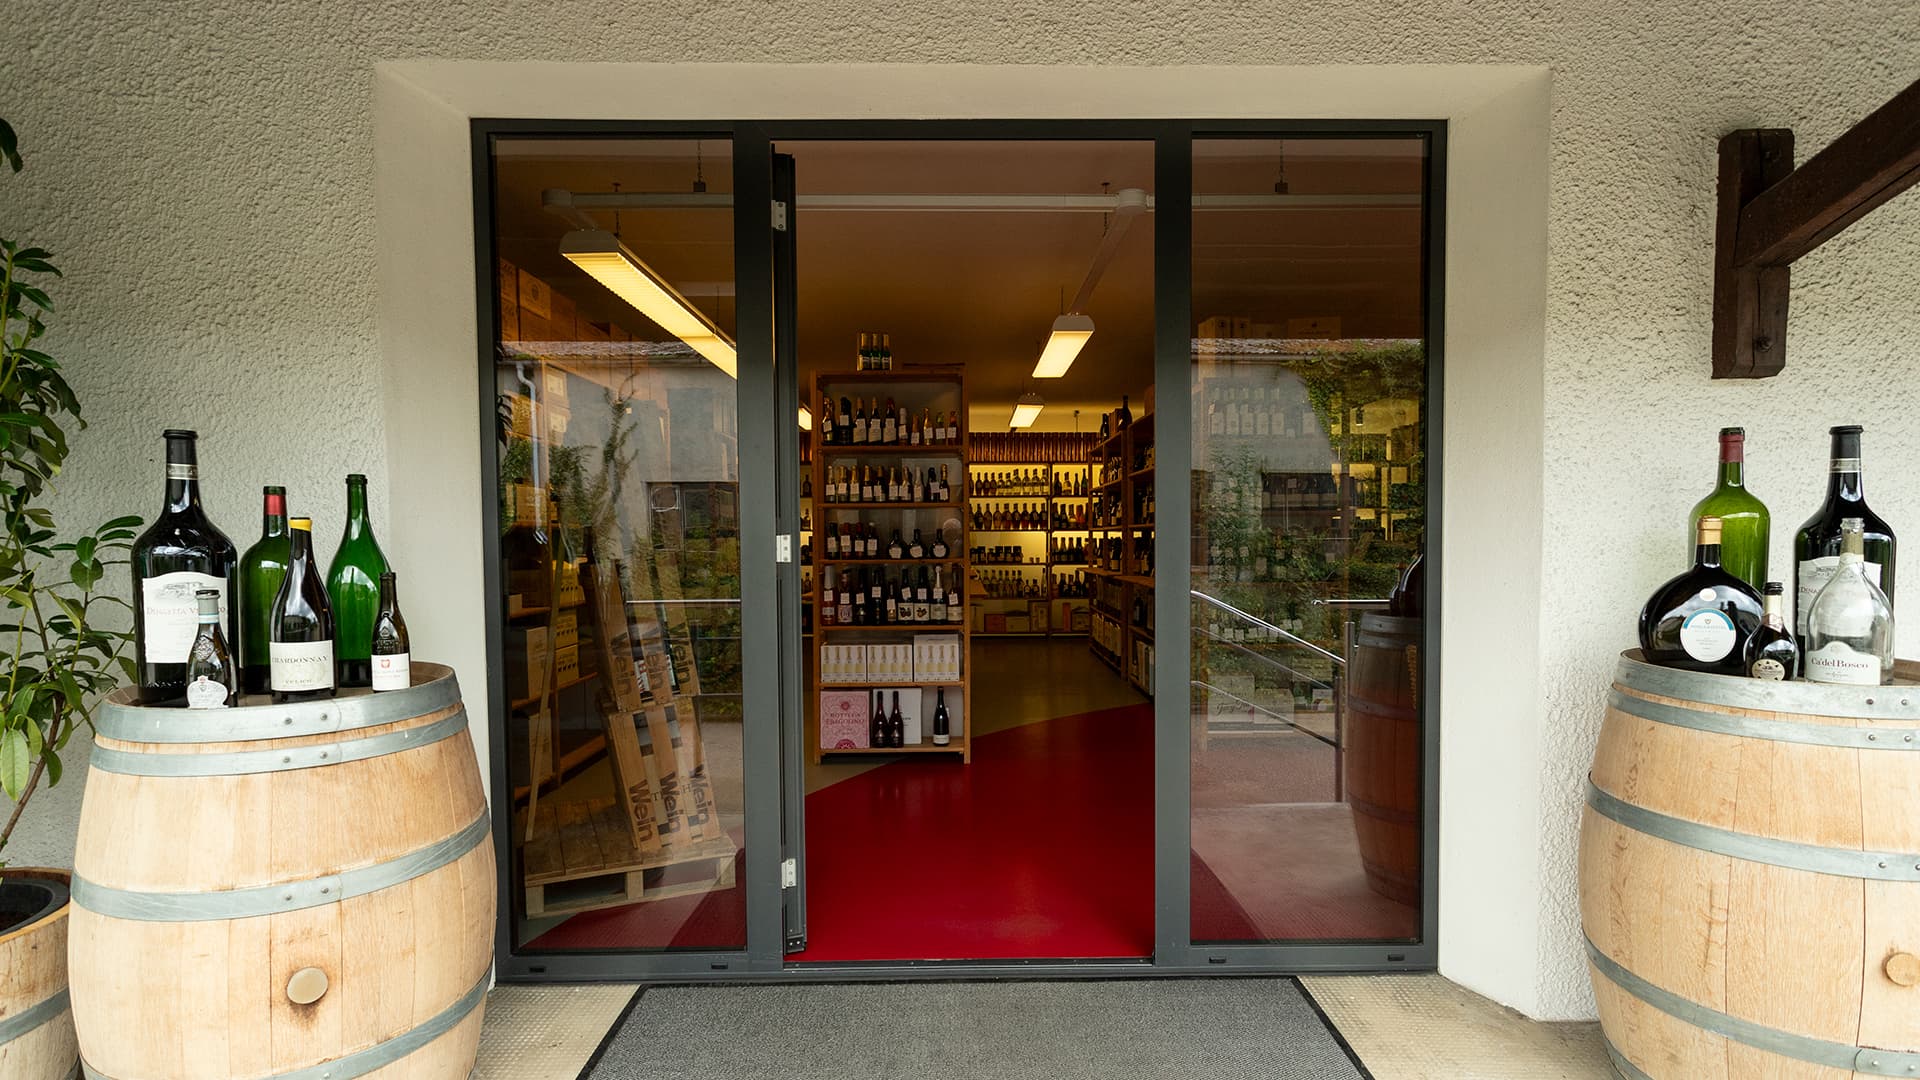 Der Eingangsbereich von Wein-Engelhardt. Die offene Tür gewährt einen Blick ins Ladengeschäft auf die vollen Wein- und Spirituosenregale.